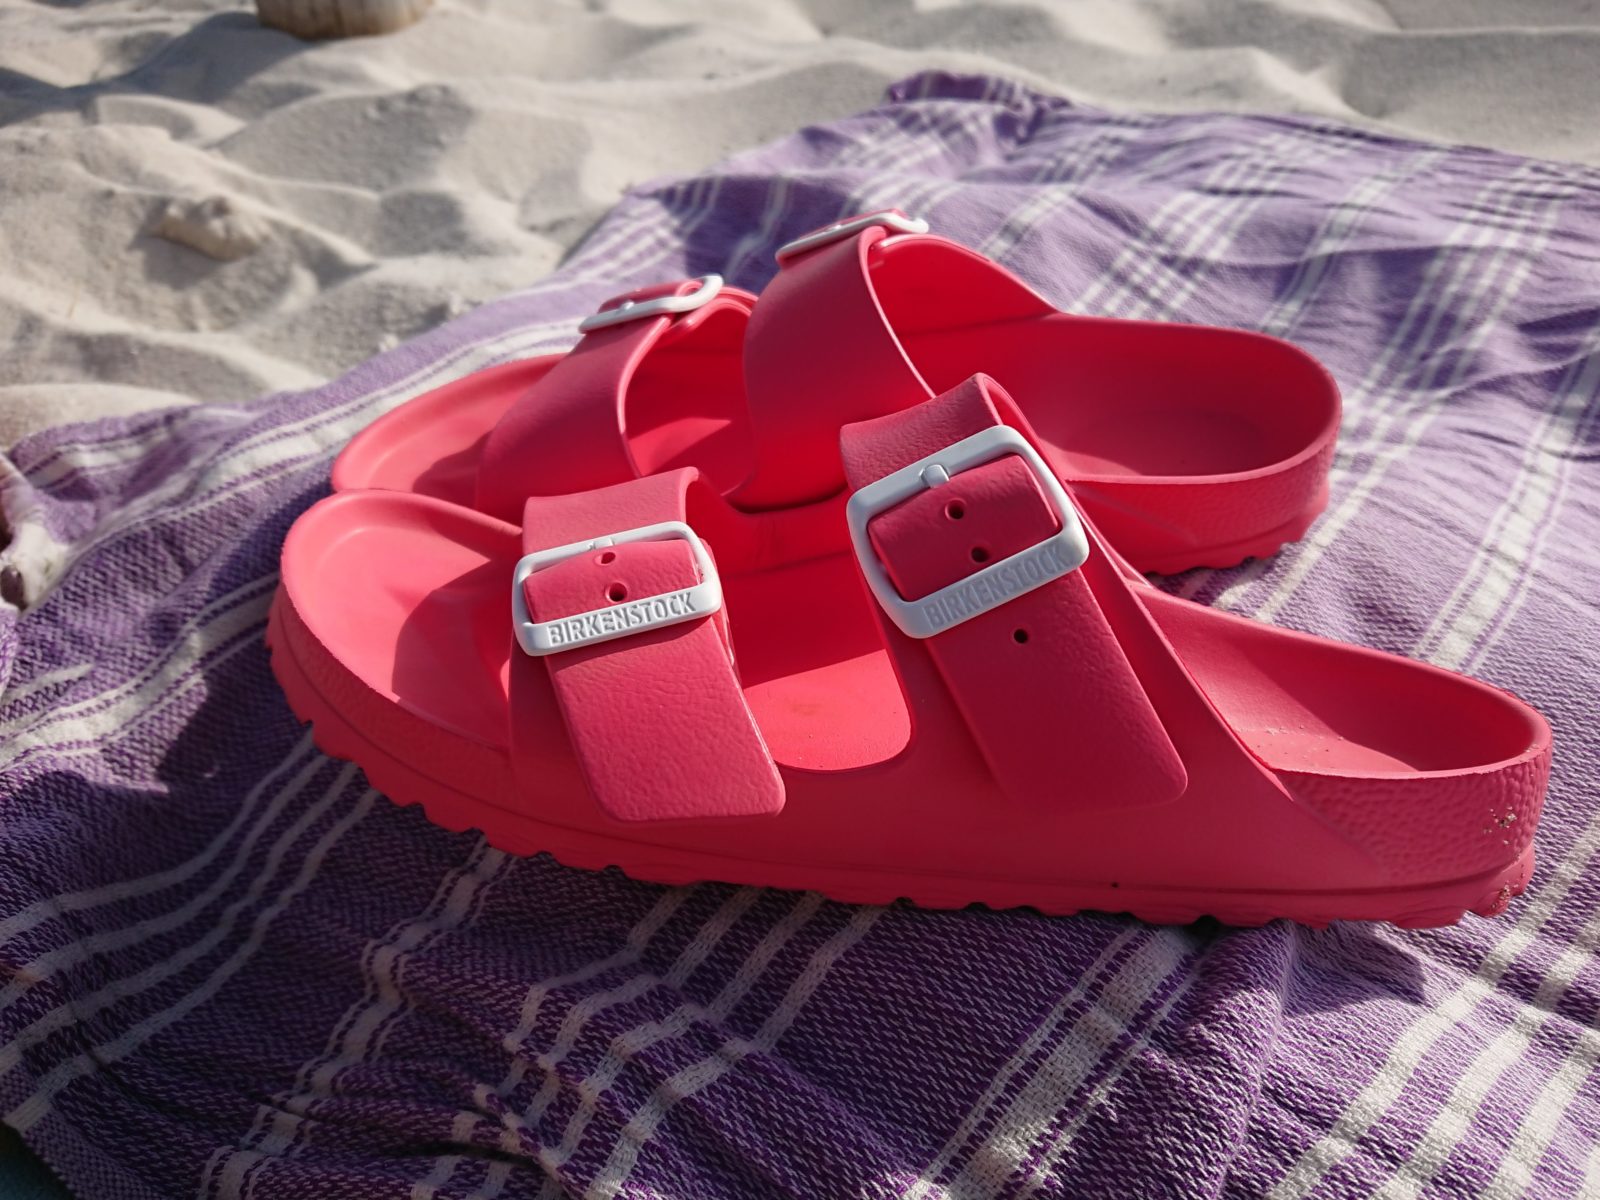 birkenstock beach sandals uk